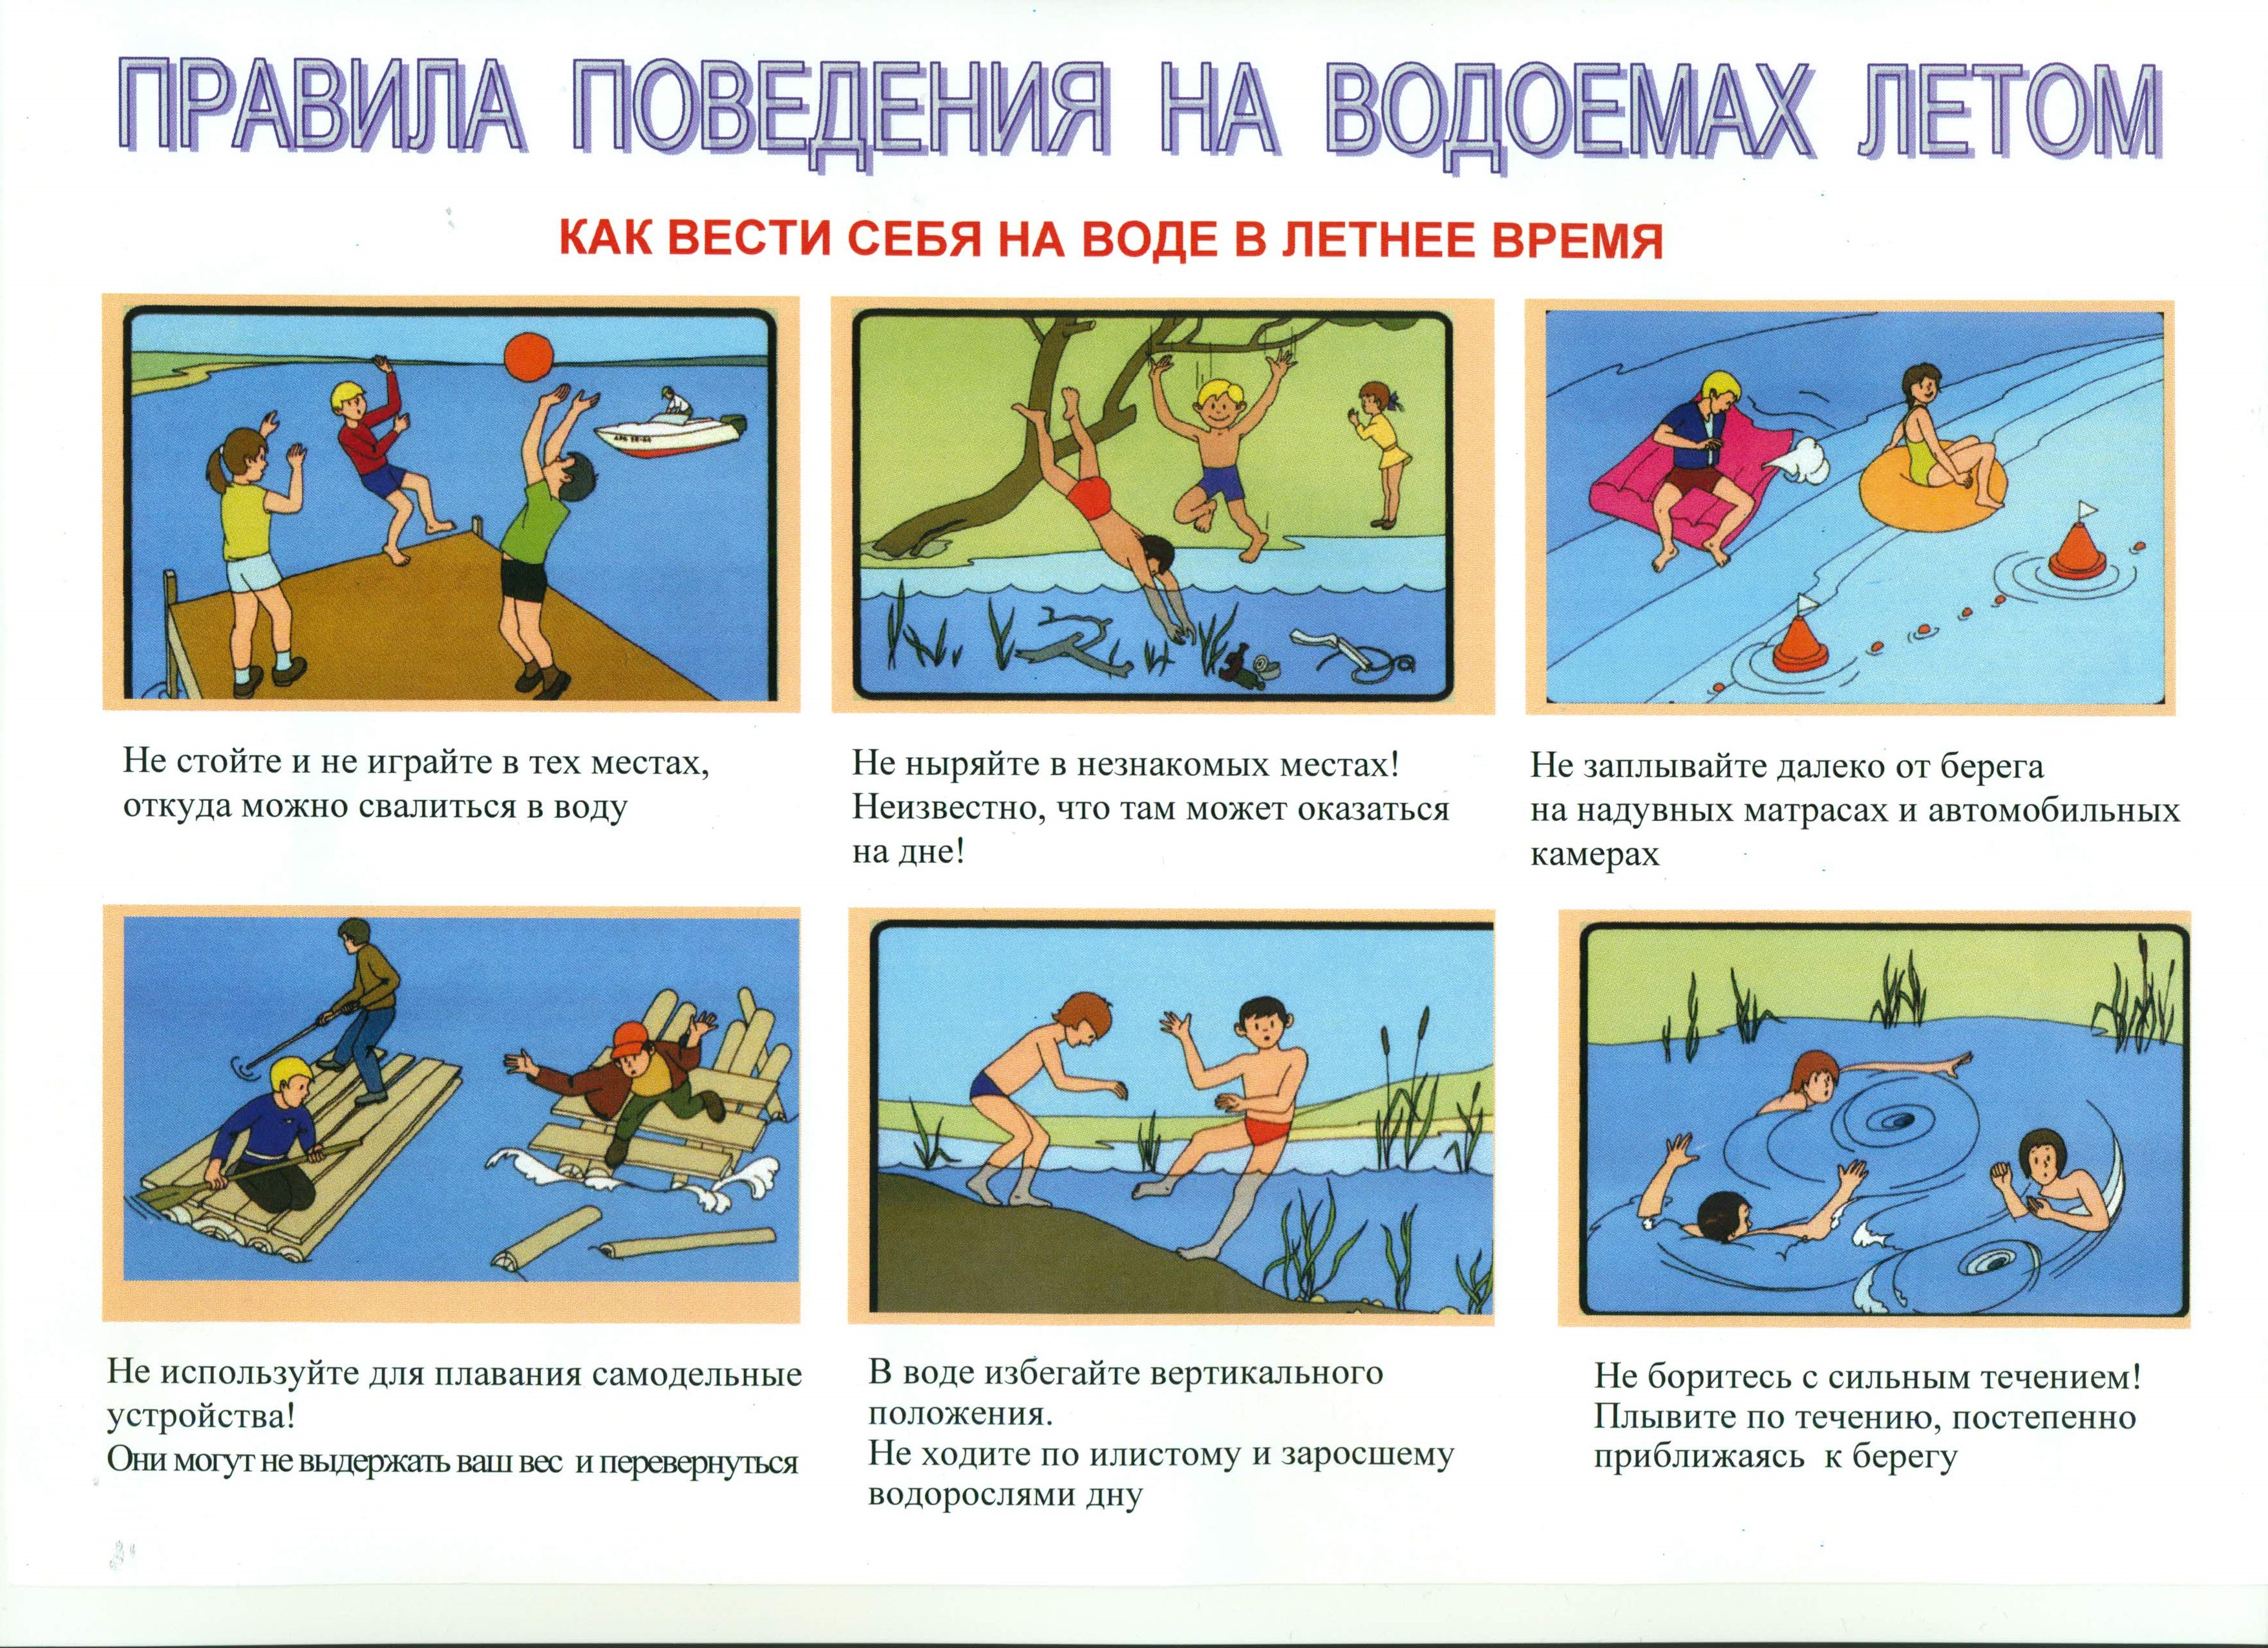 Безопасное поведение детей на водных объектах. Правила безопасности на водоемах для детей. Правила поведения на водоемах летом для детей. Правила поведения вблизи водоемов в летний период. Правила безопасного поведения на водоемах.